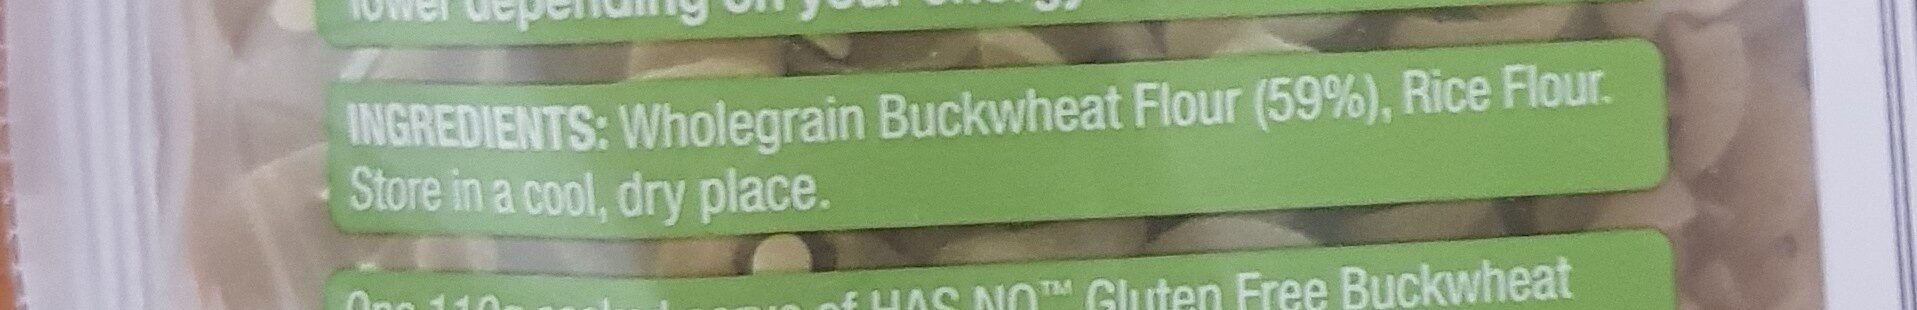 Buckwheat pasta spirals - Ingredients